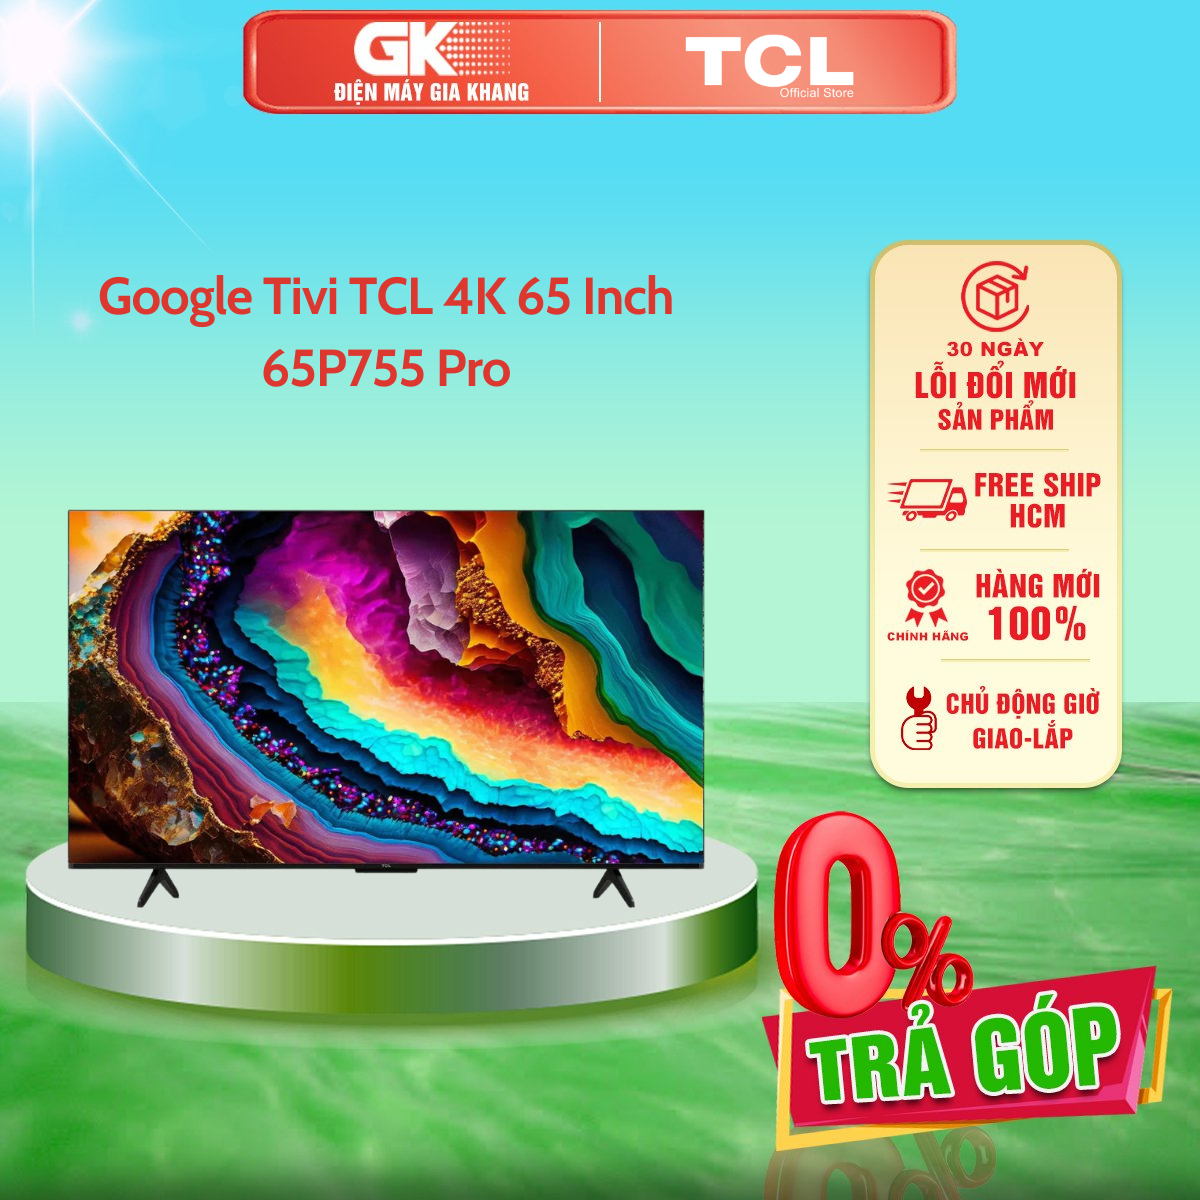 Google Tivi TCL 4K 65 Inch 65P755 Pro - GIAO TOÀN QUỐC - FREESHIP HCM